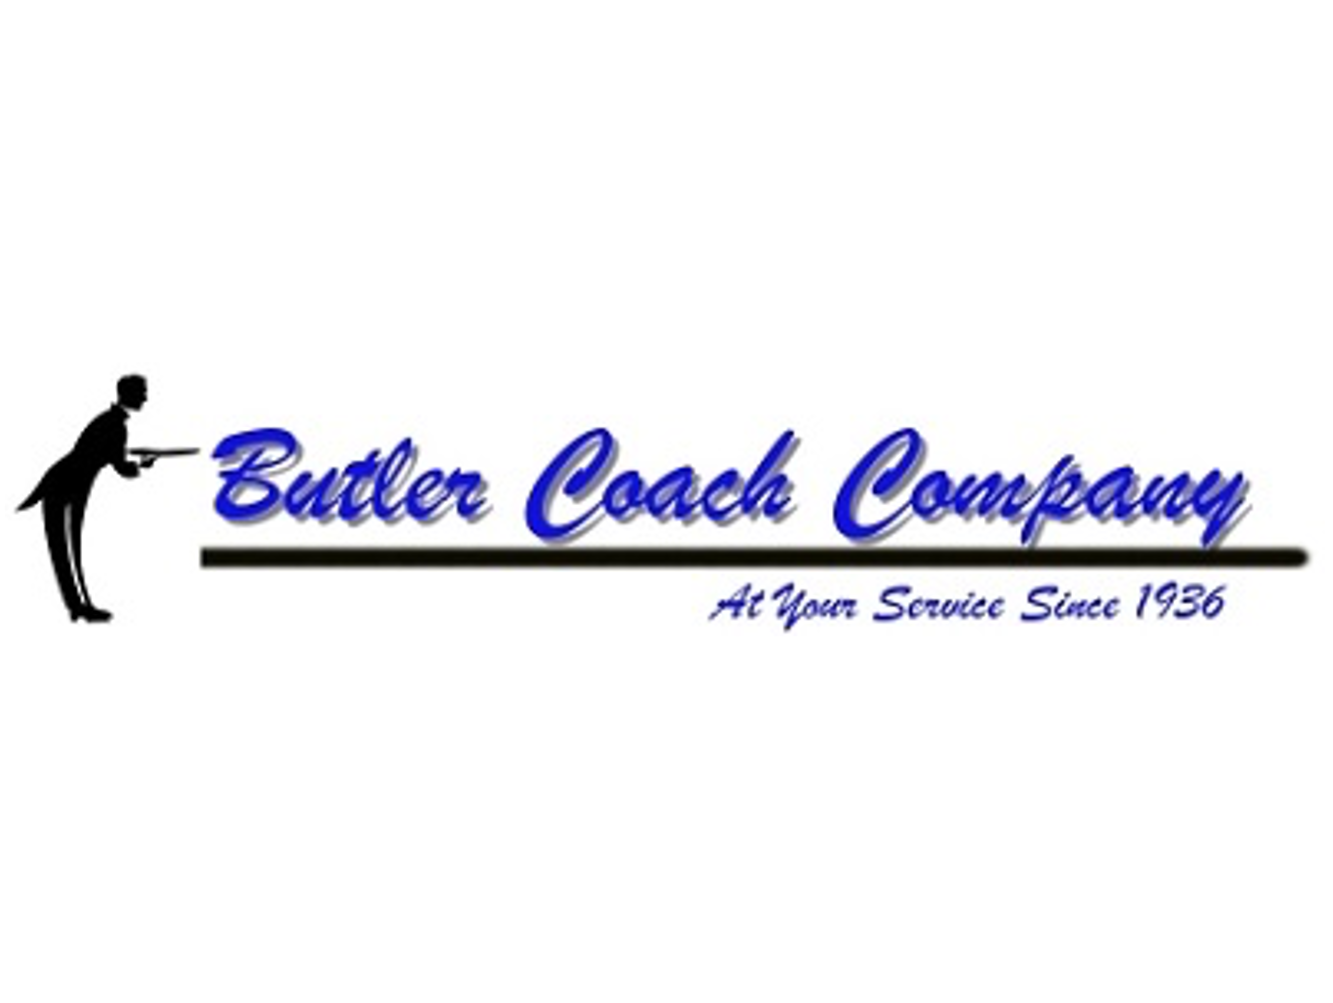 Butler Coach